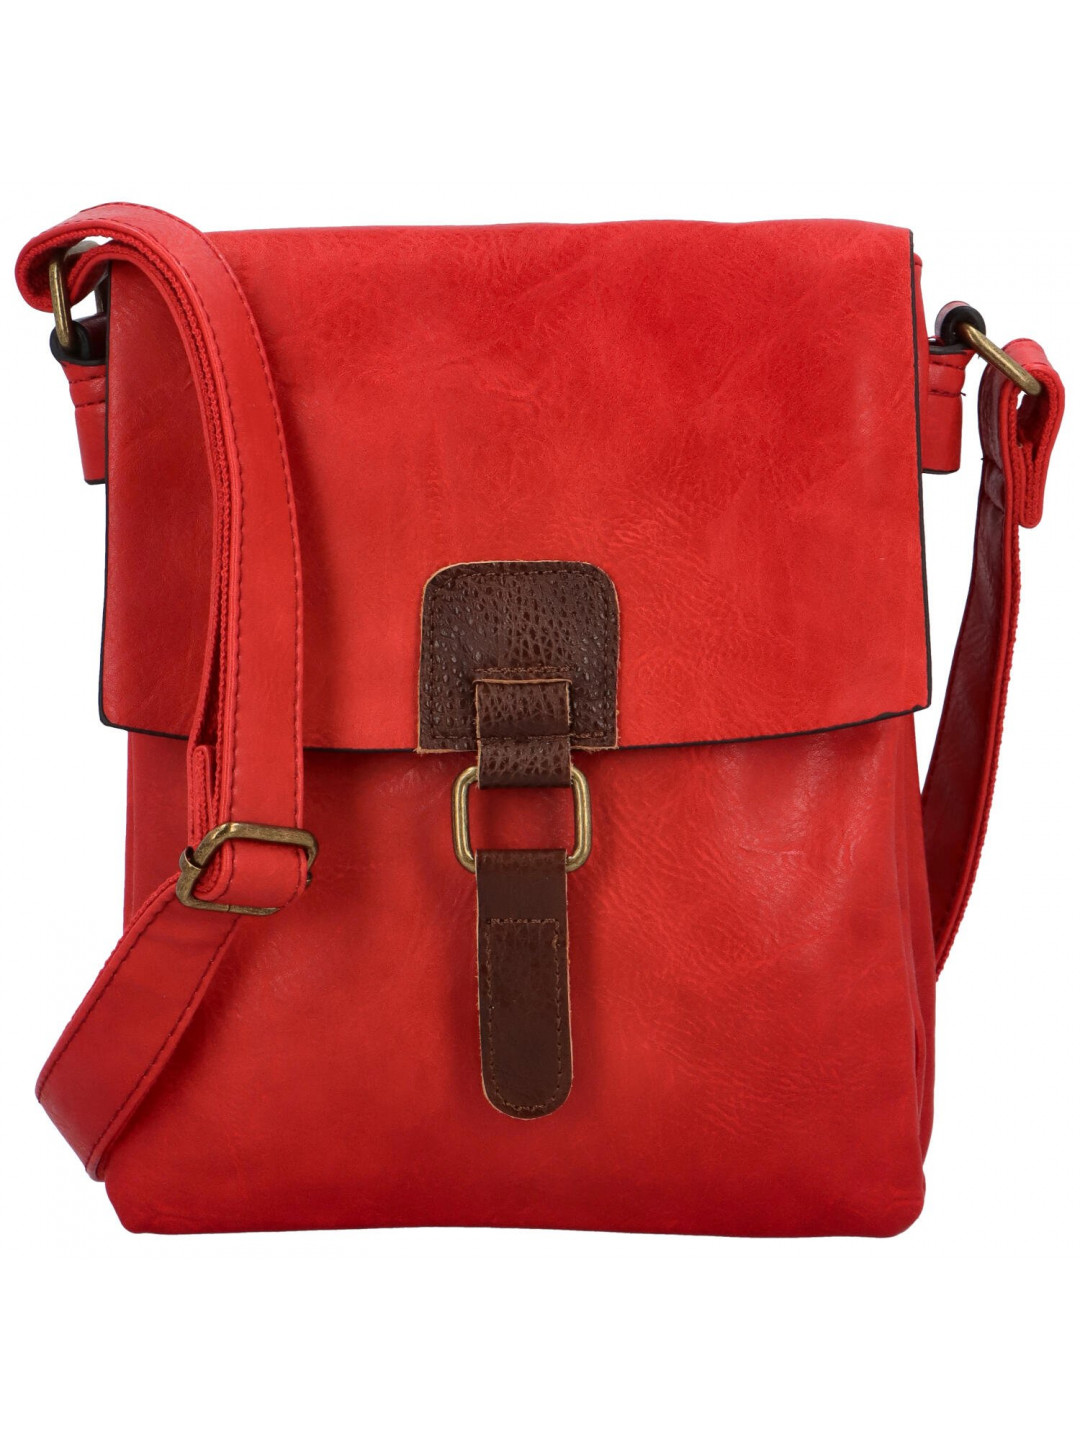 Dámská crossbody kabelka červená – Paolo bags Oresta